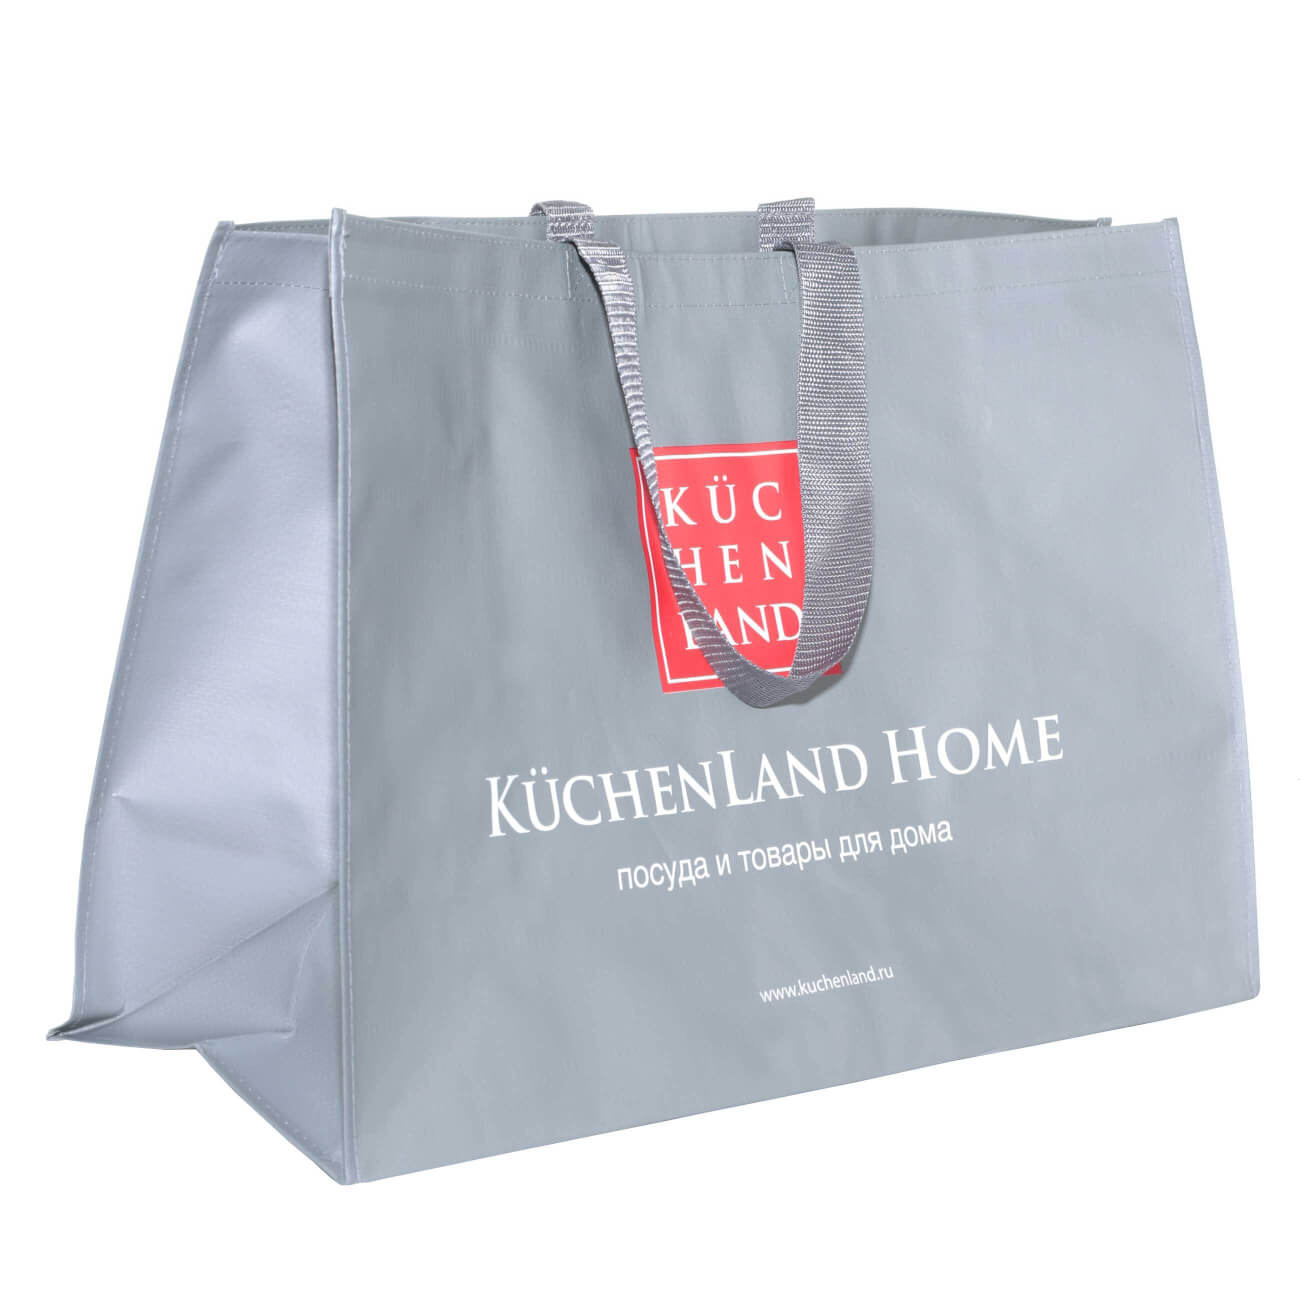 Сумка-шоппер, 60х40 см, серая, Kuchenland, Basic сумка шоппер текстильная марвел 35 1 40 5см серая